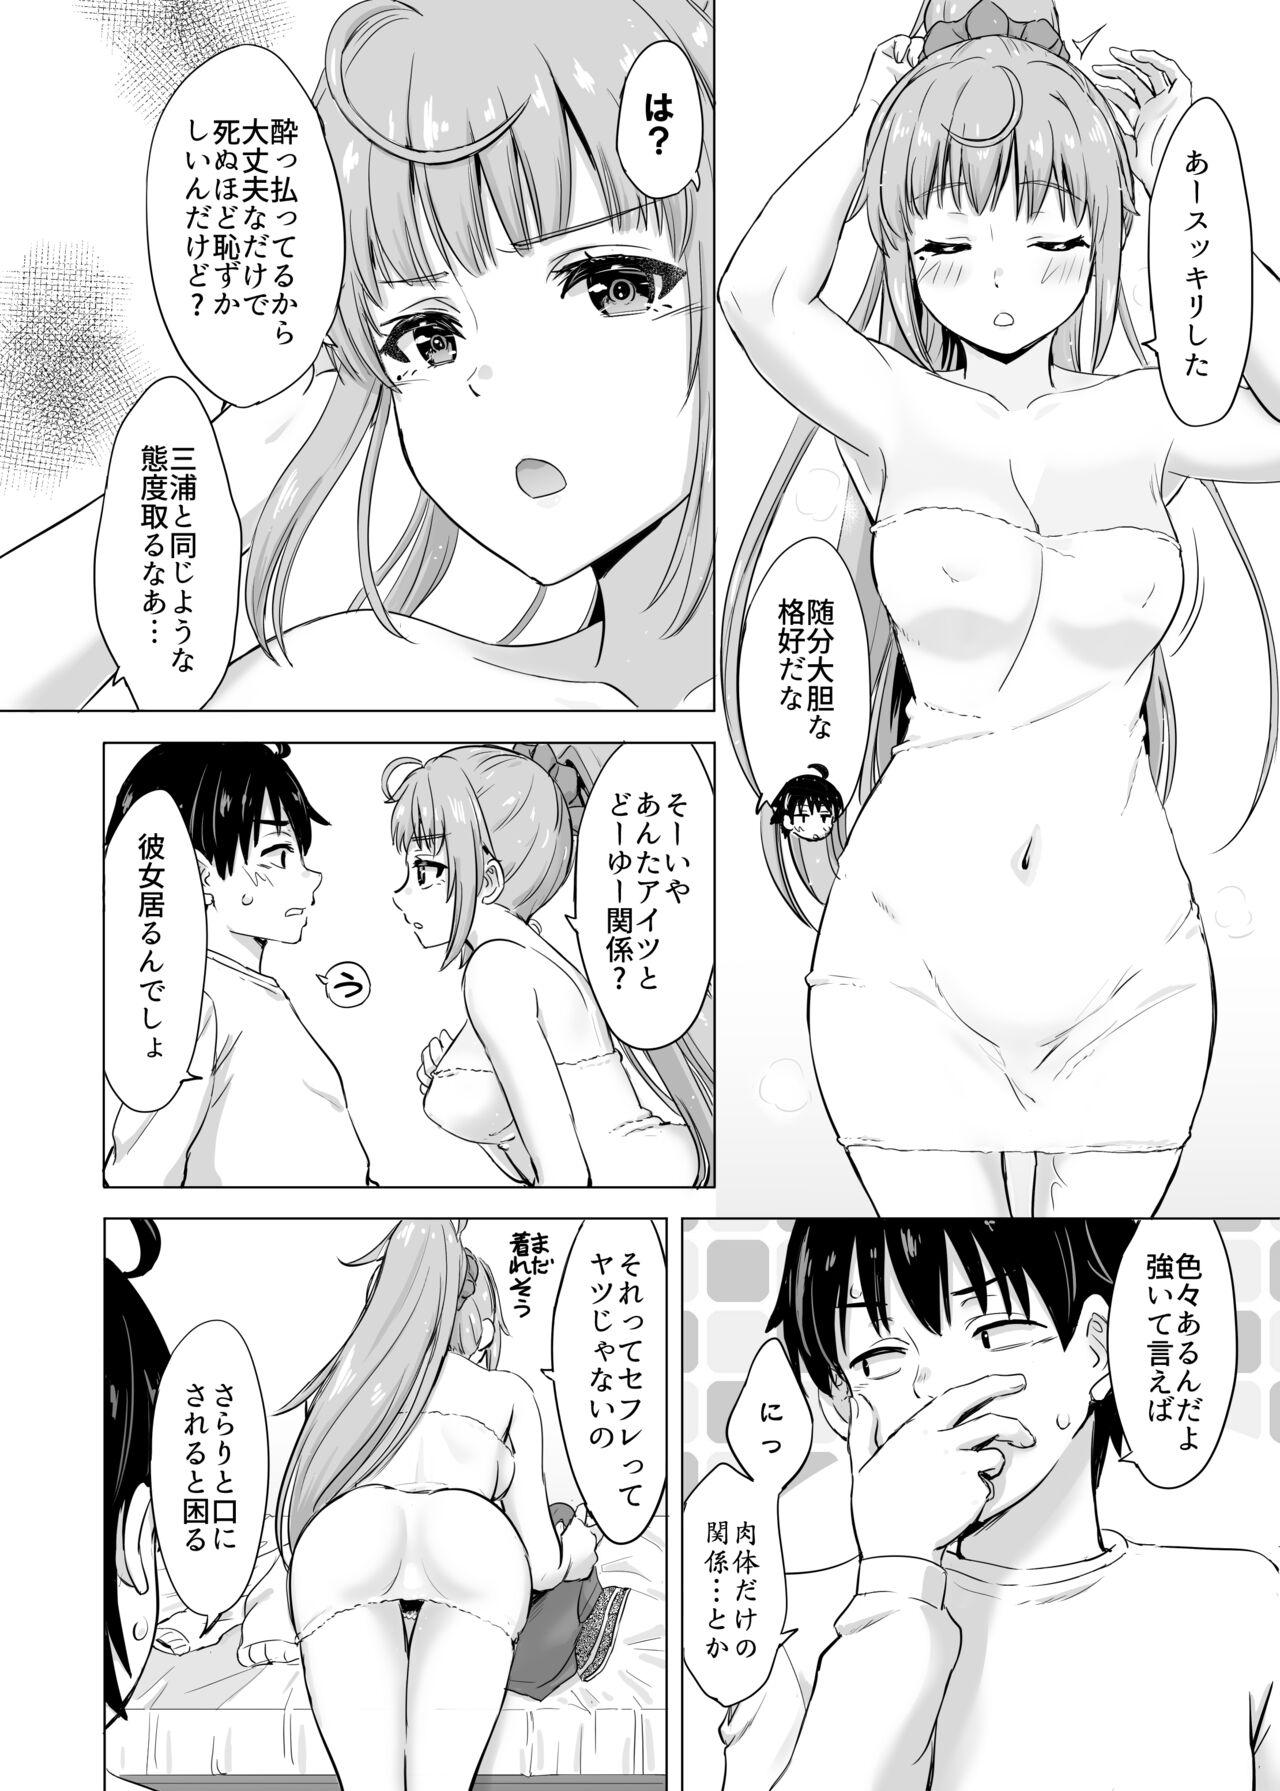 Office Sex Ashi-san Saki Saki Manga - Yahari ore no seishun love come wa machigatteiru Gay Public - Page 7